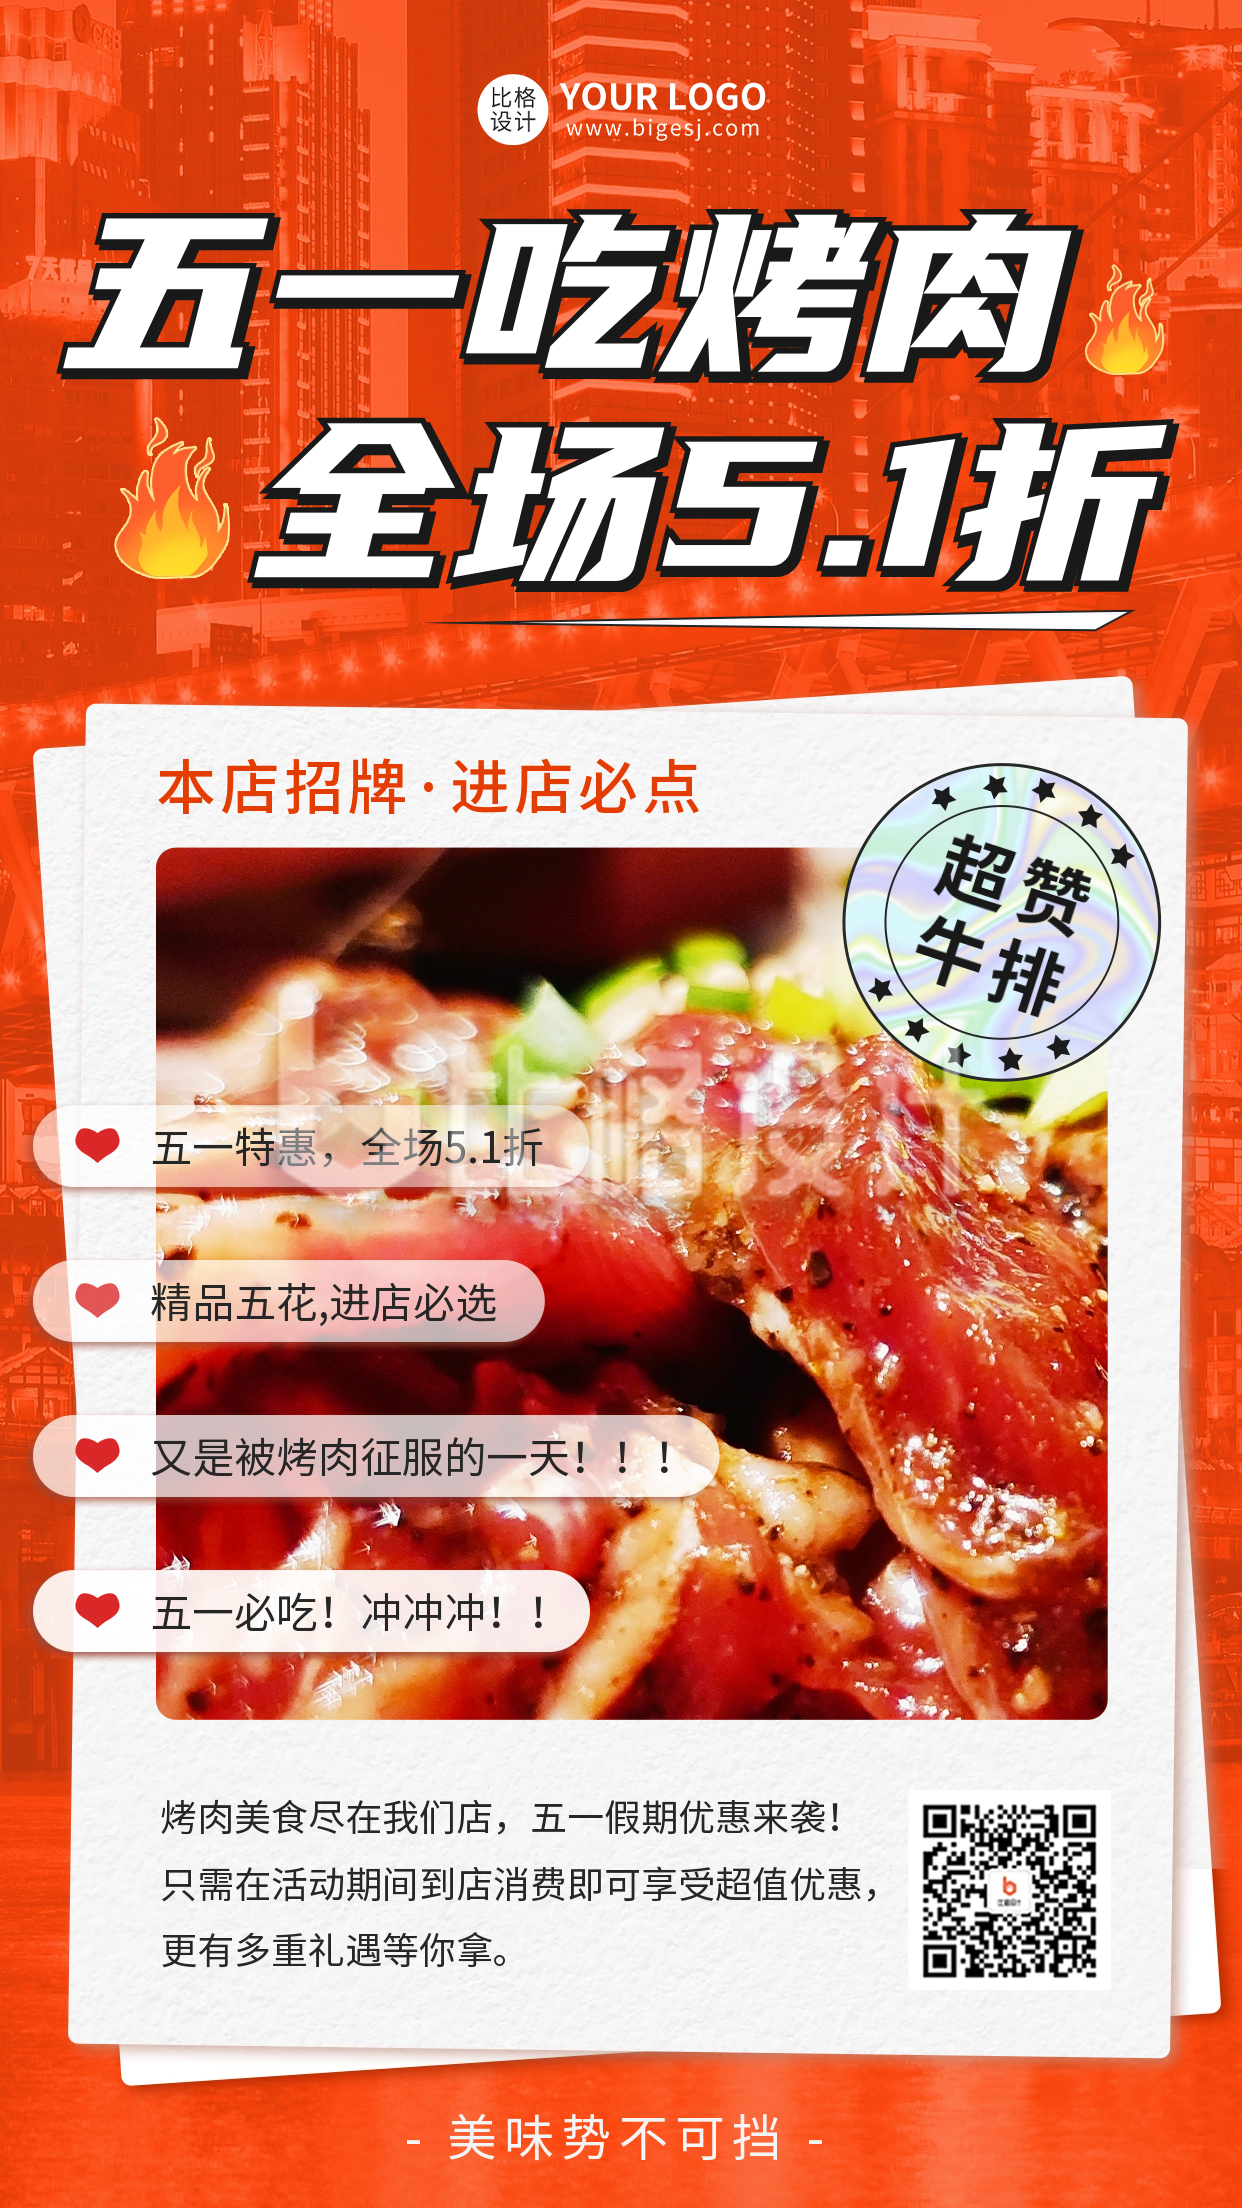 五一劳动节餐饮促销活动宣传手机海报